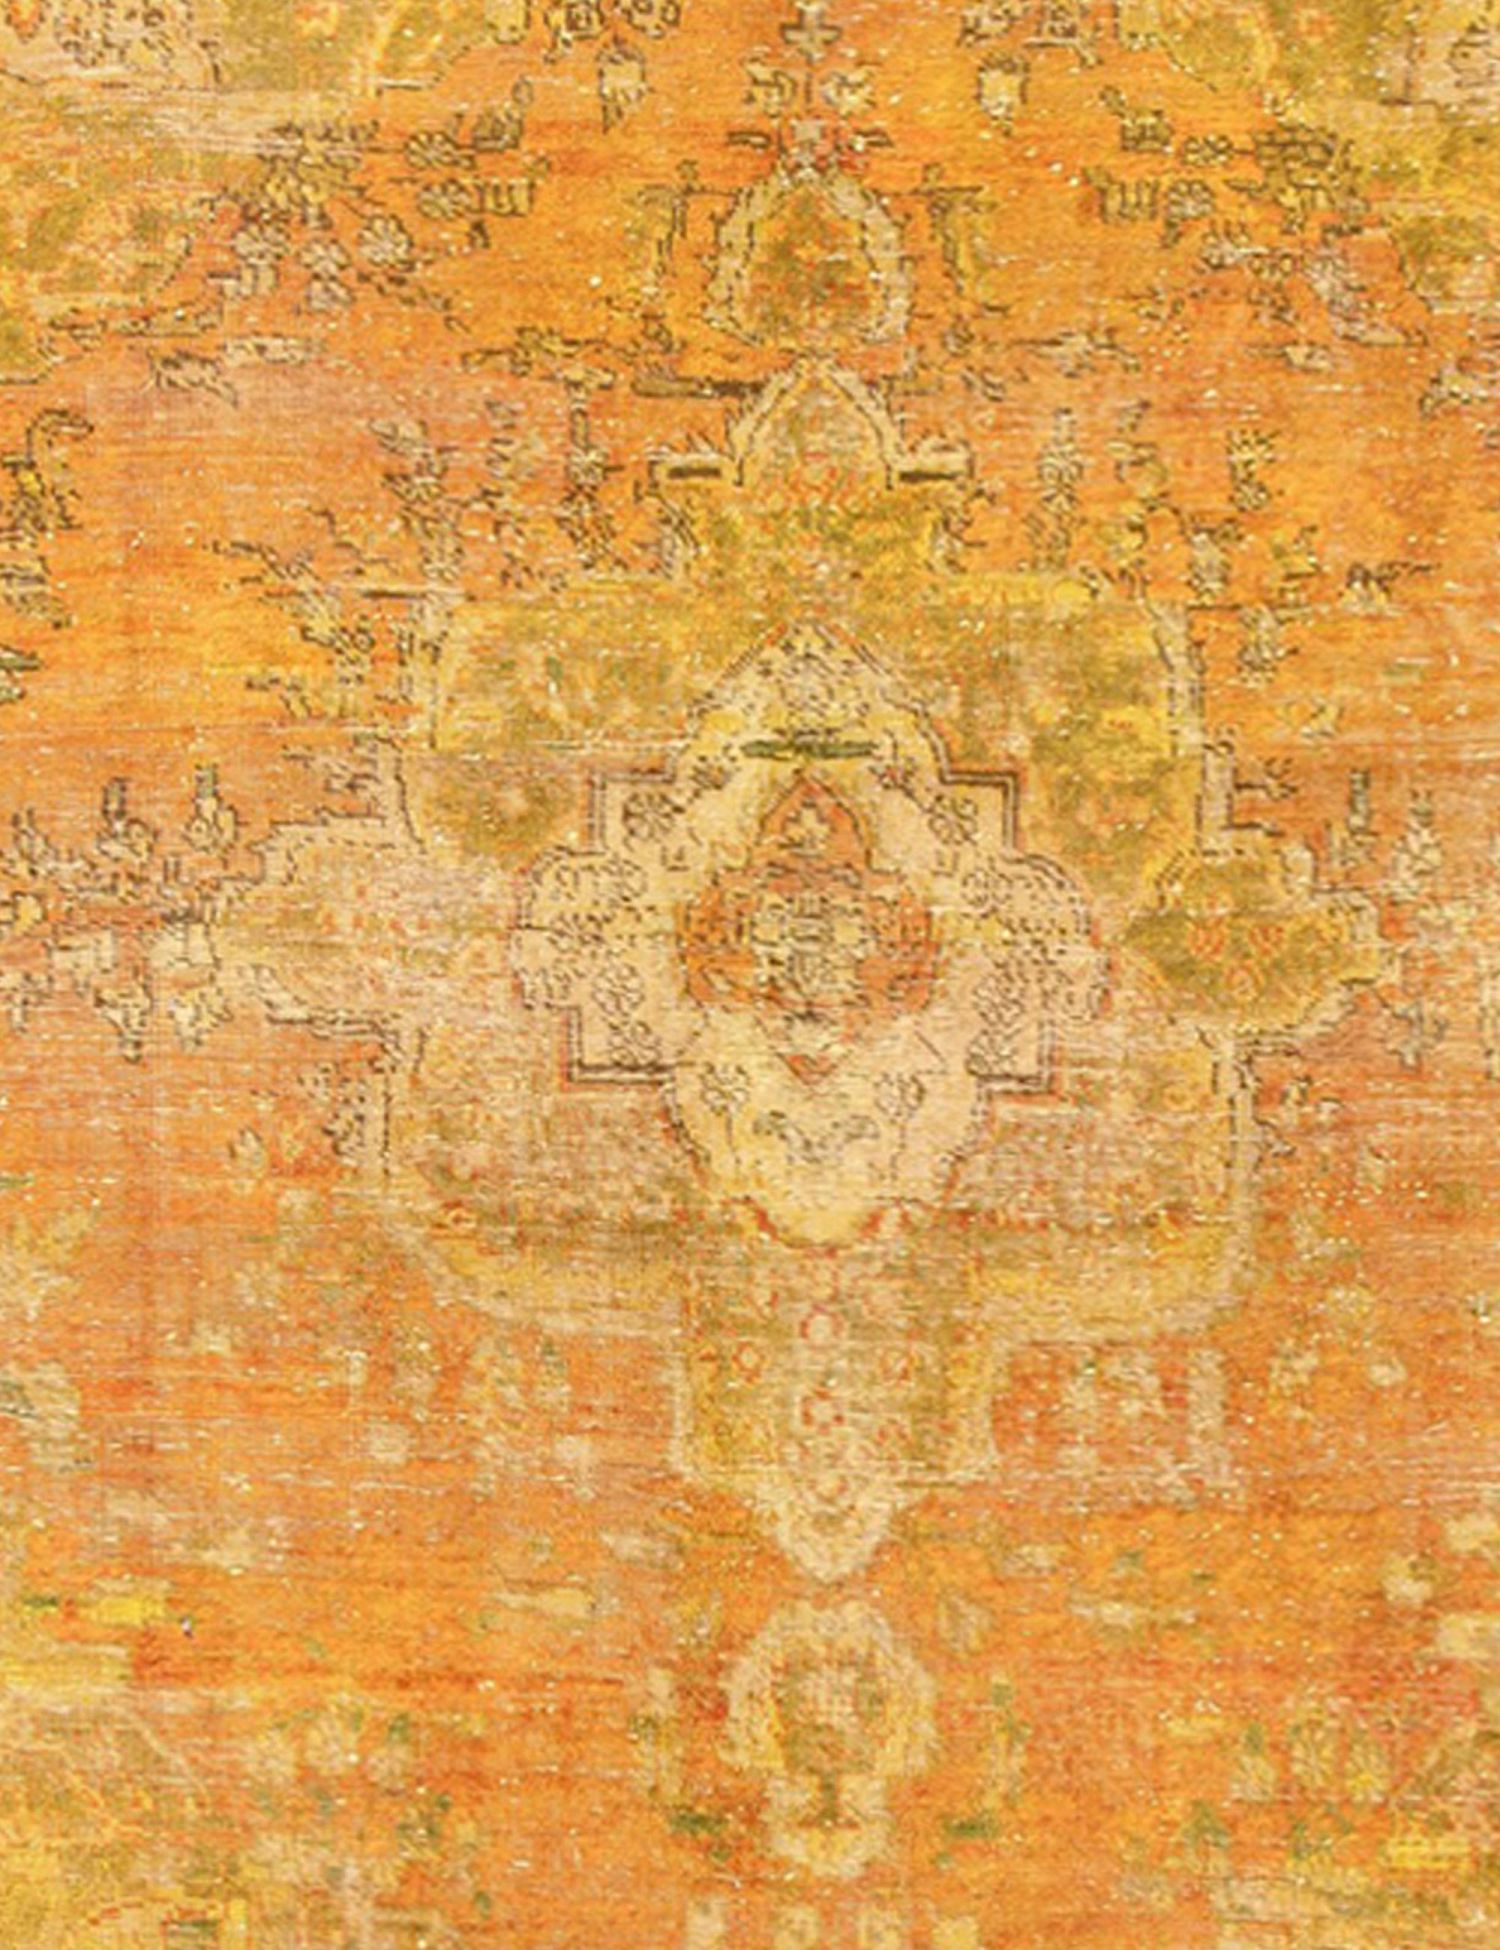 Persischer Vintage Teppich  gelb <br/>282 x 200 cm